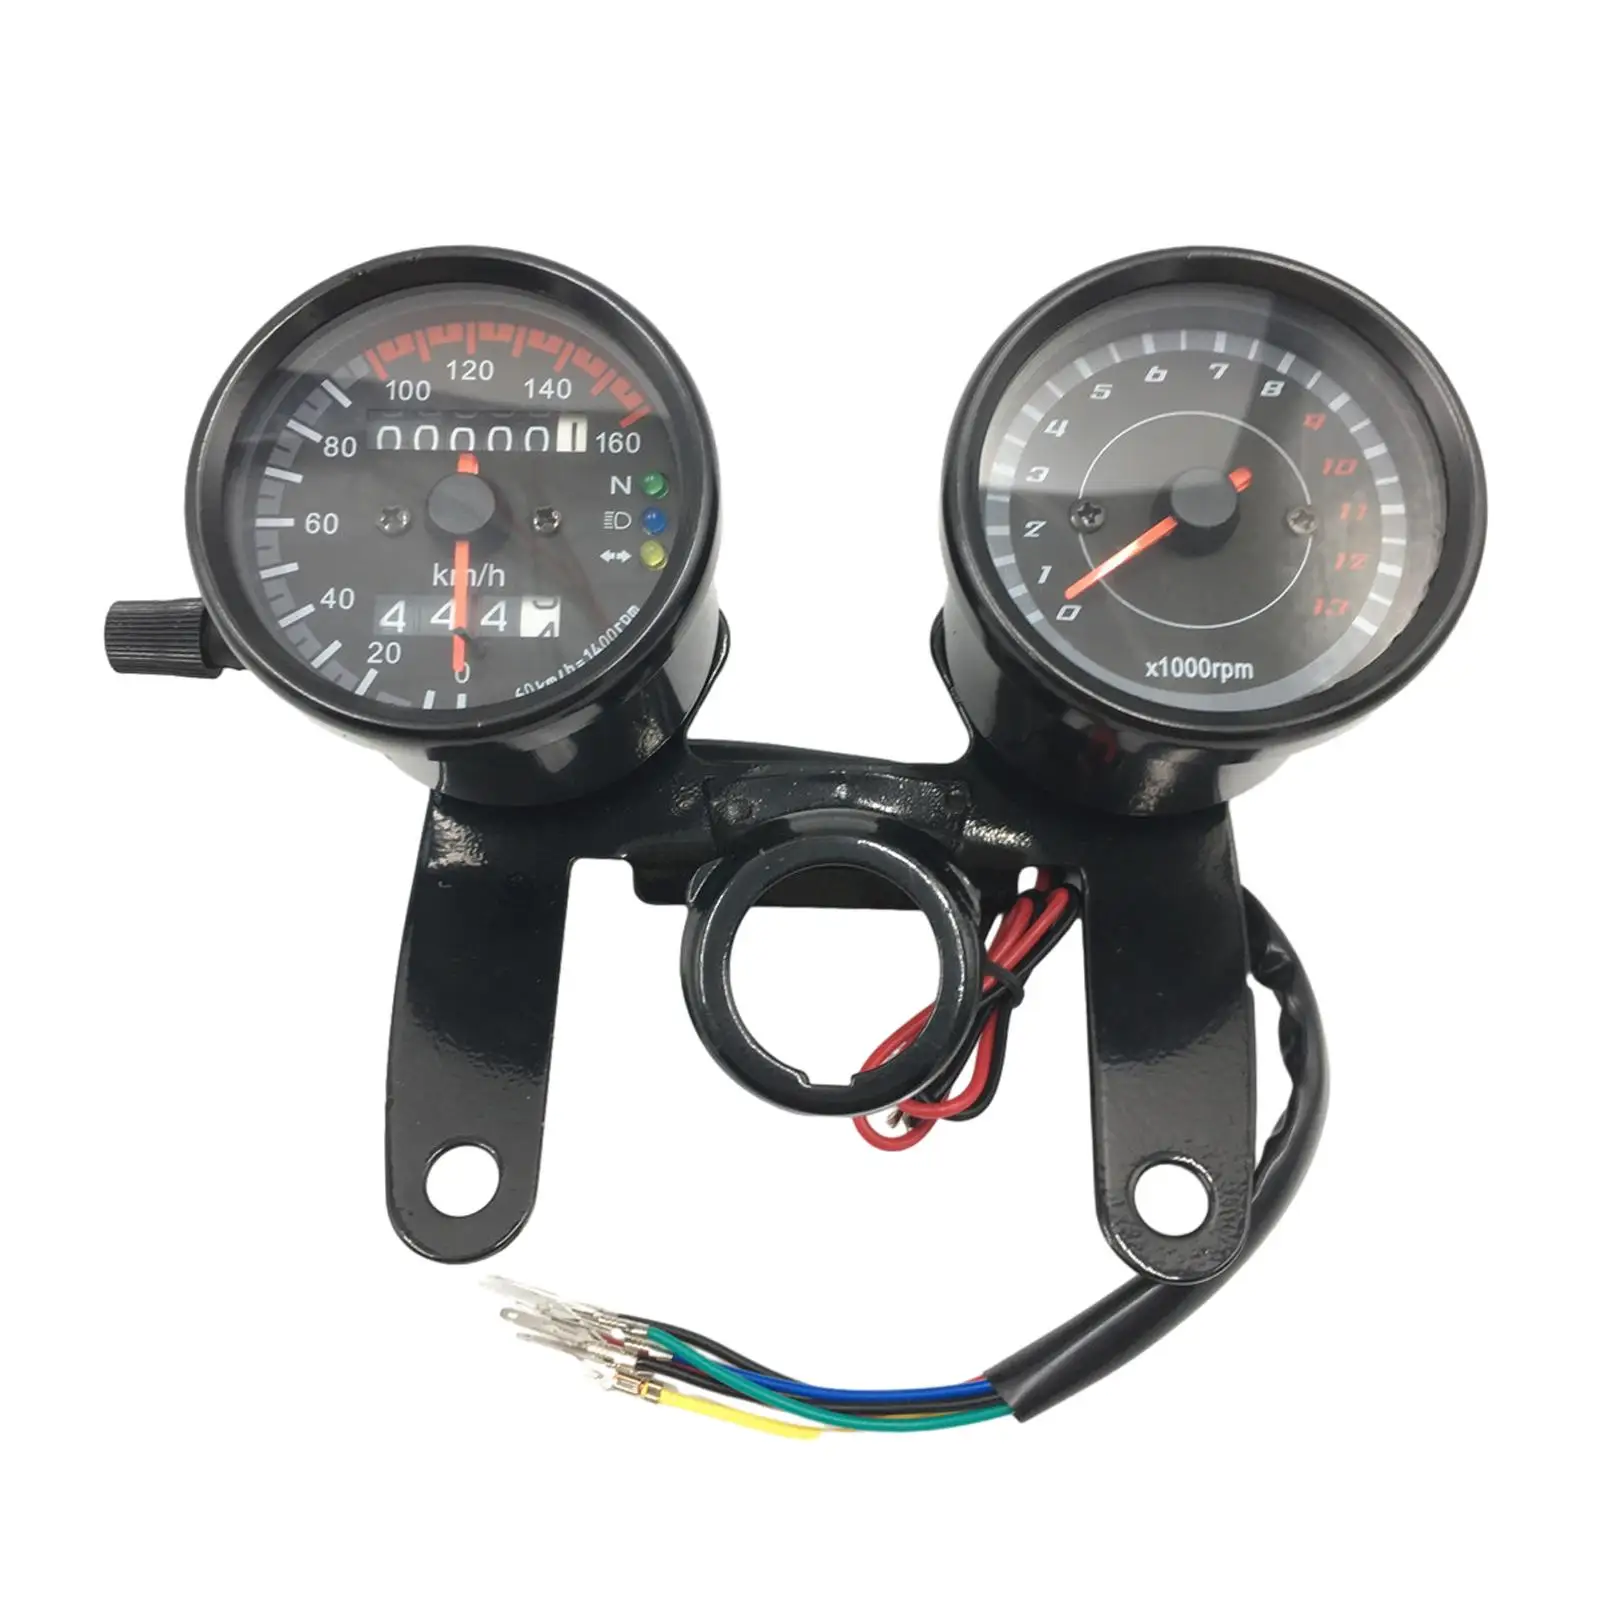 Motorkerékpár sebességmérő tartozék a stabil teljesítményért Könnyen telepíthető